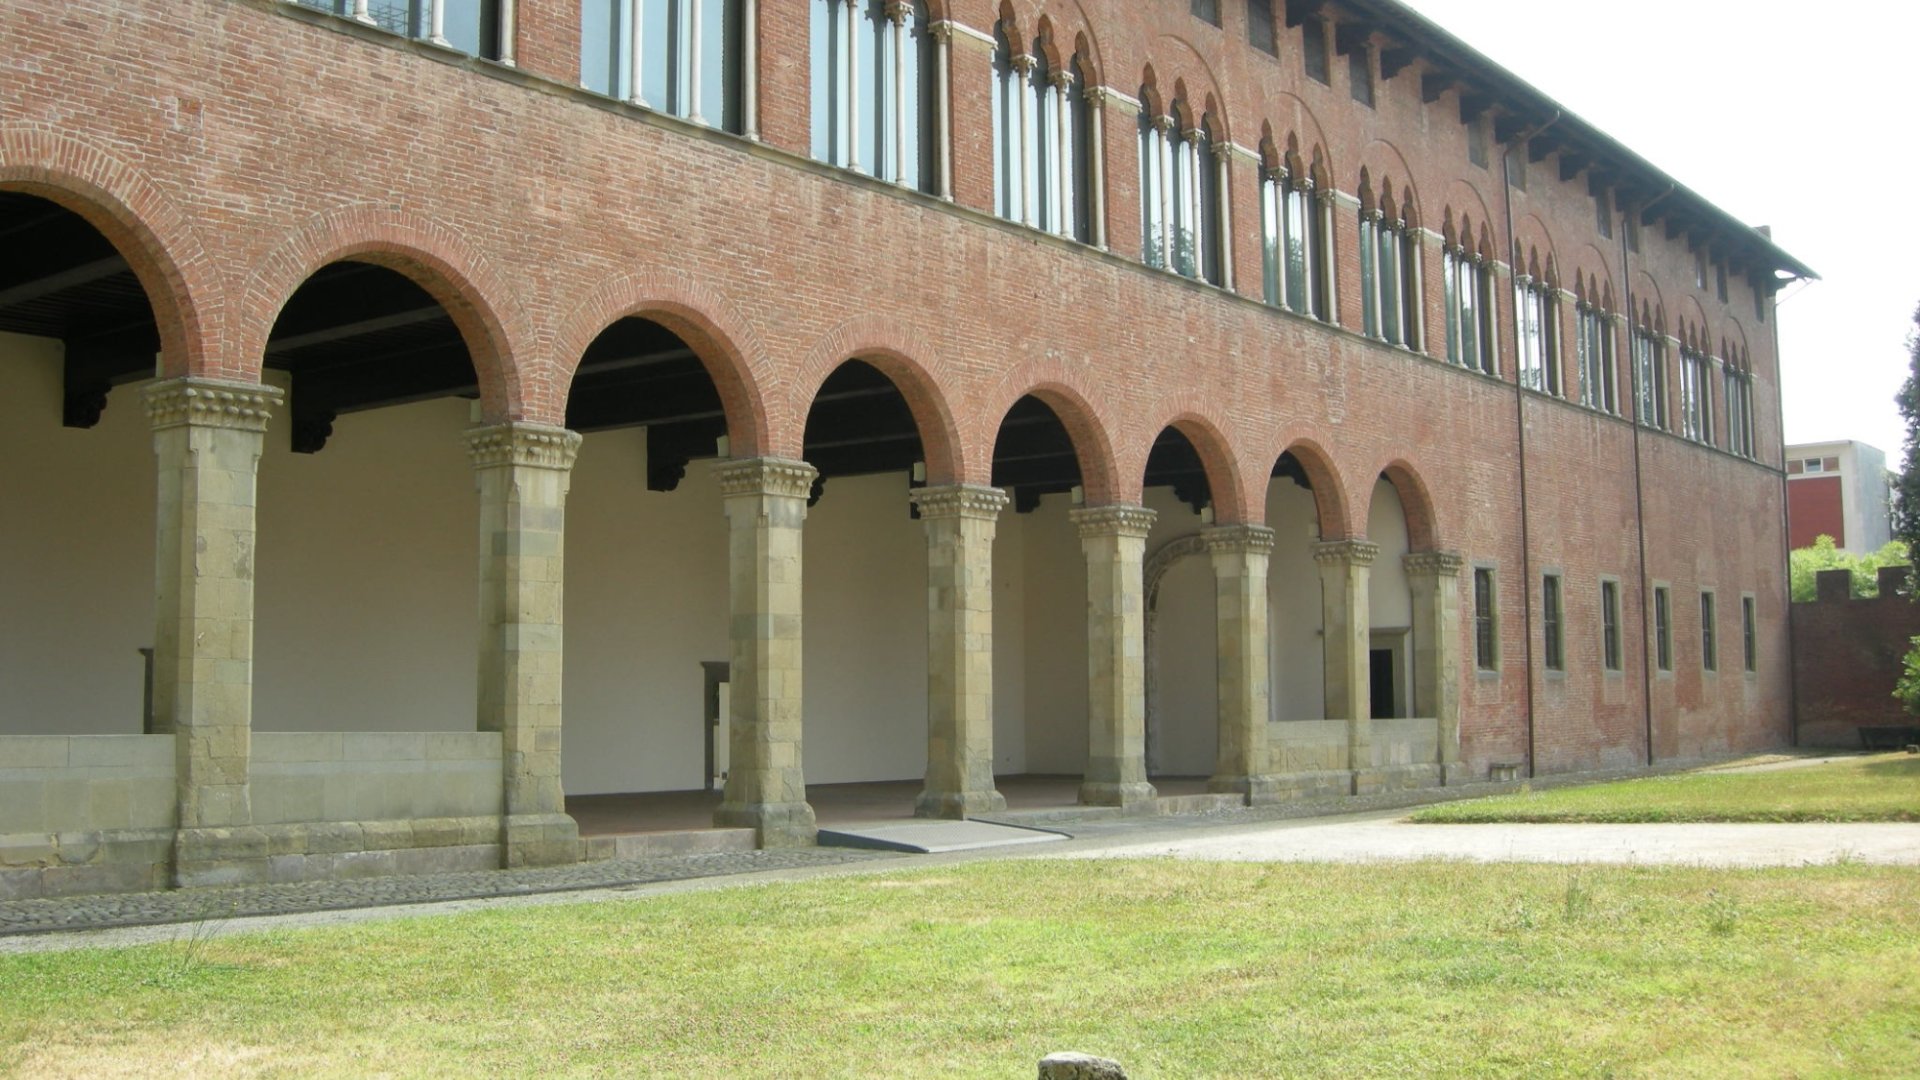 Villa Guinigi